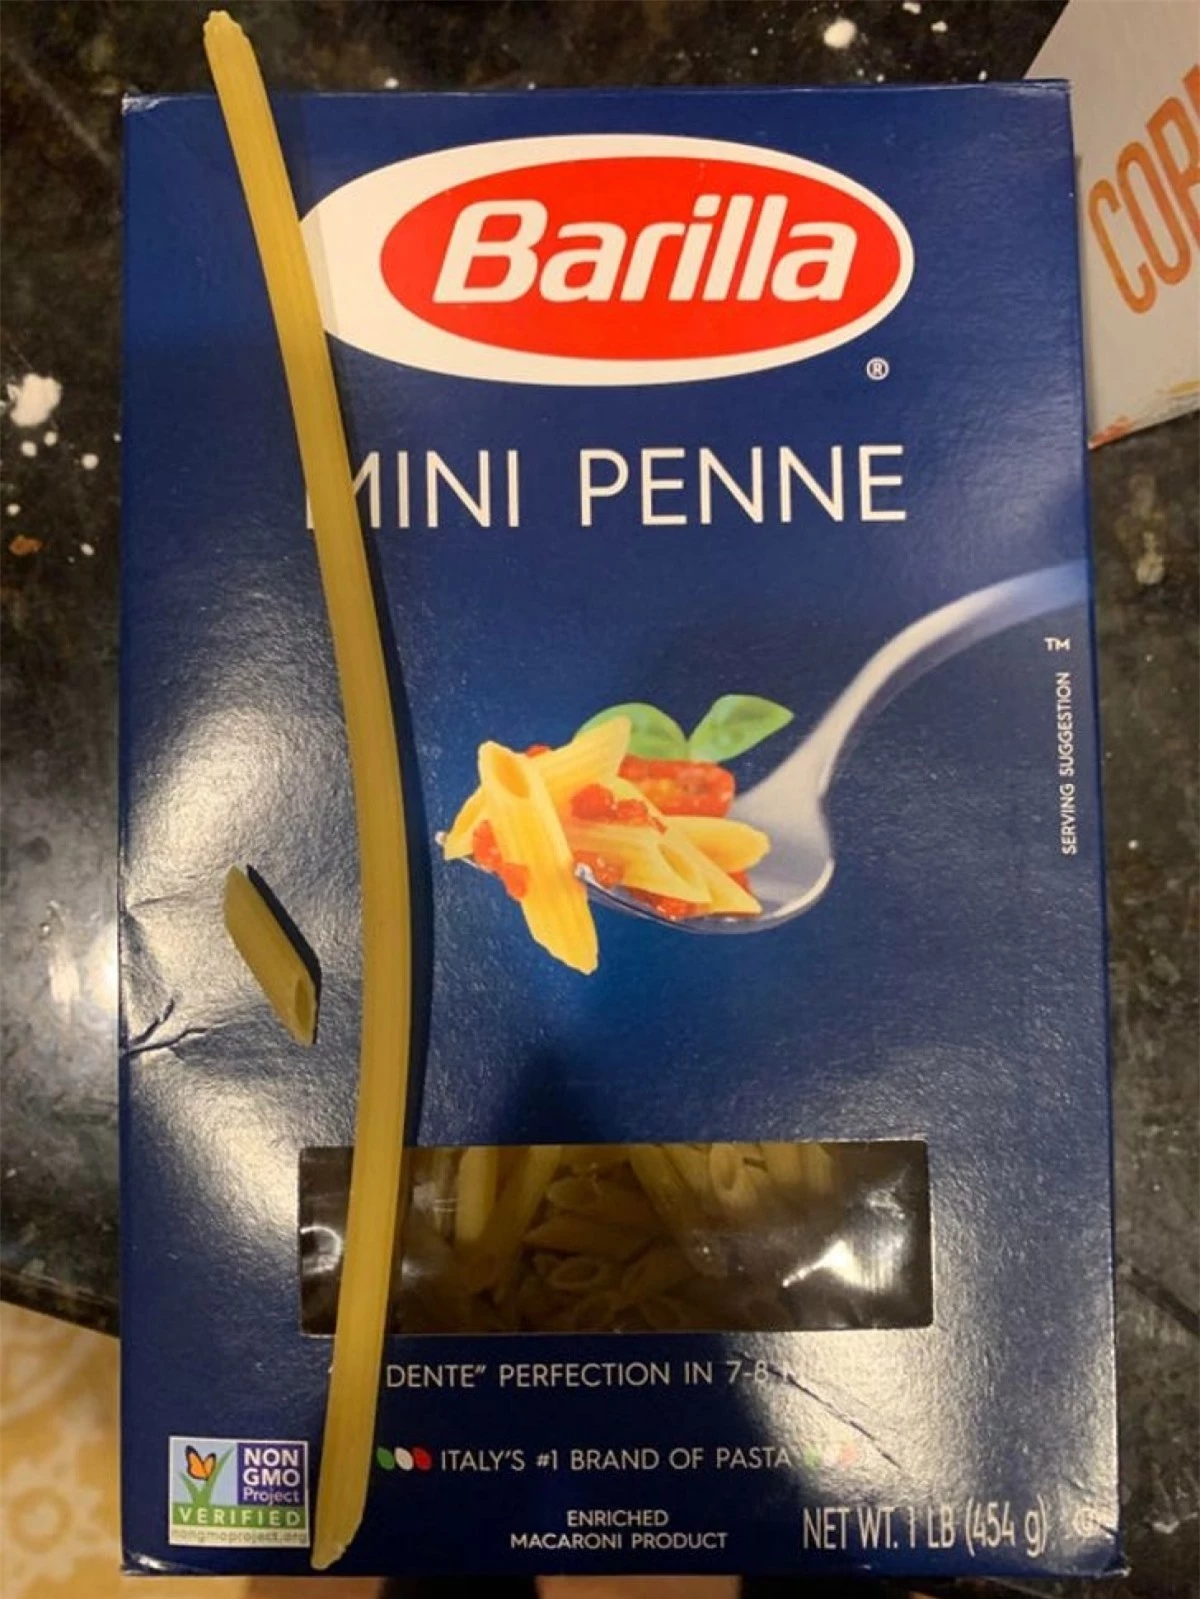 Rất hiếm khi bắt gặp loại mỳ Ý cỡ nhỏ như thế này.